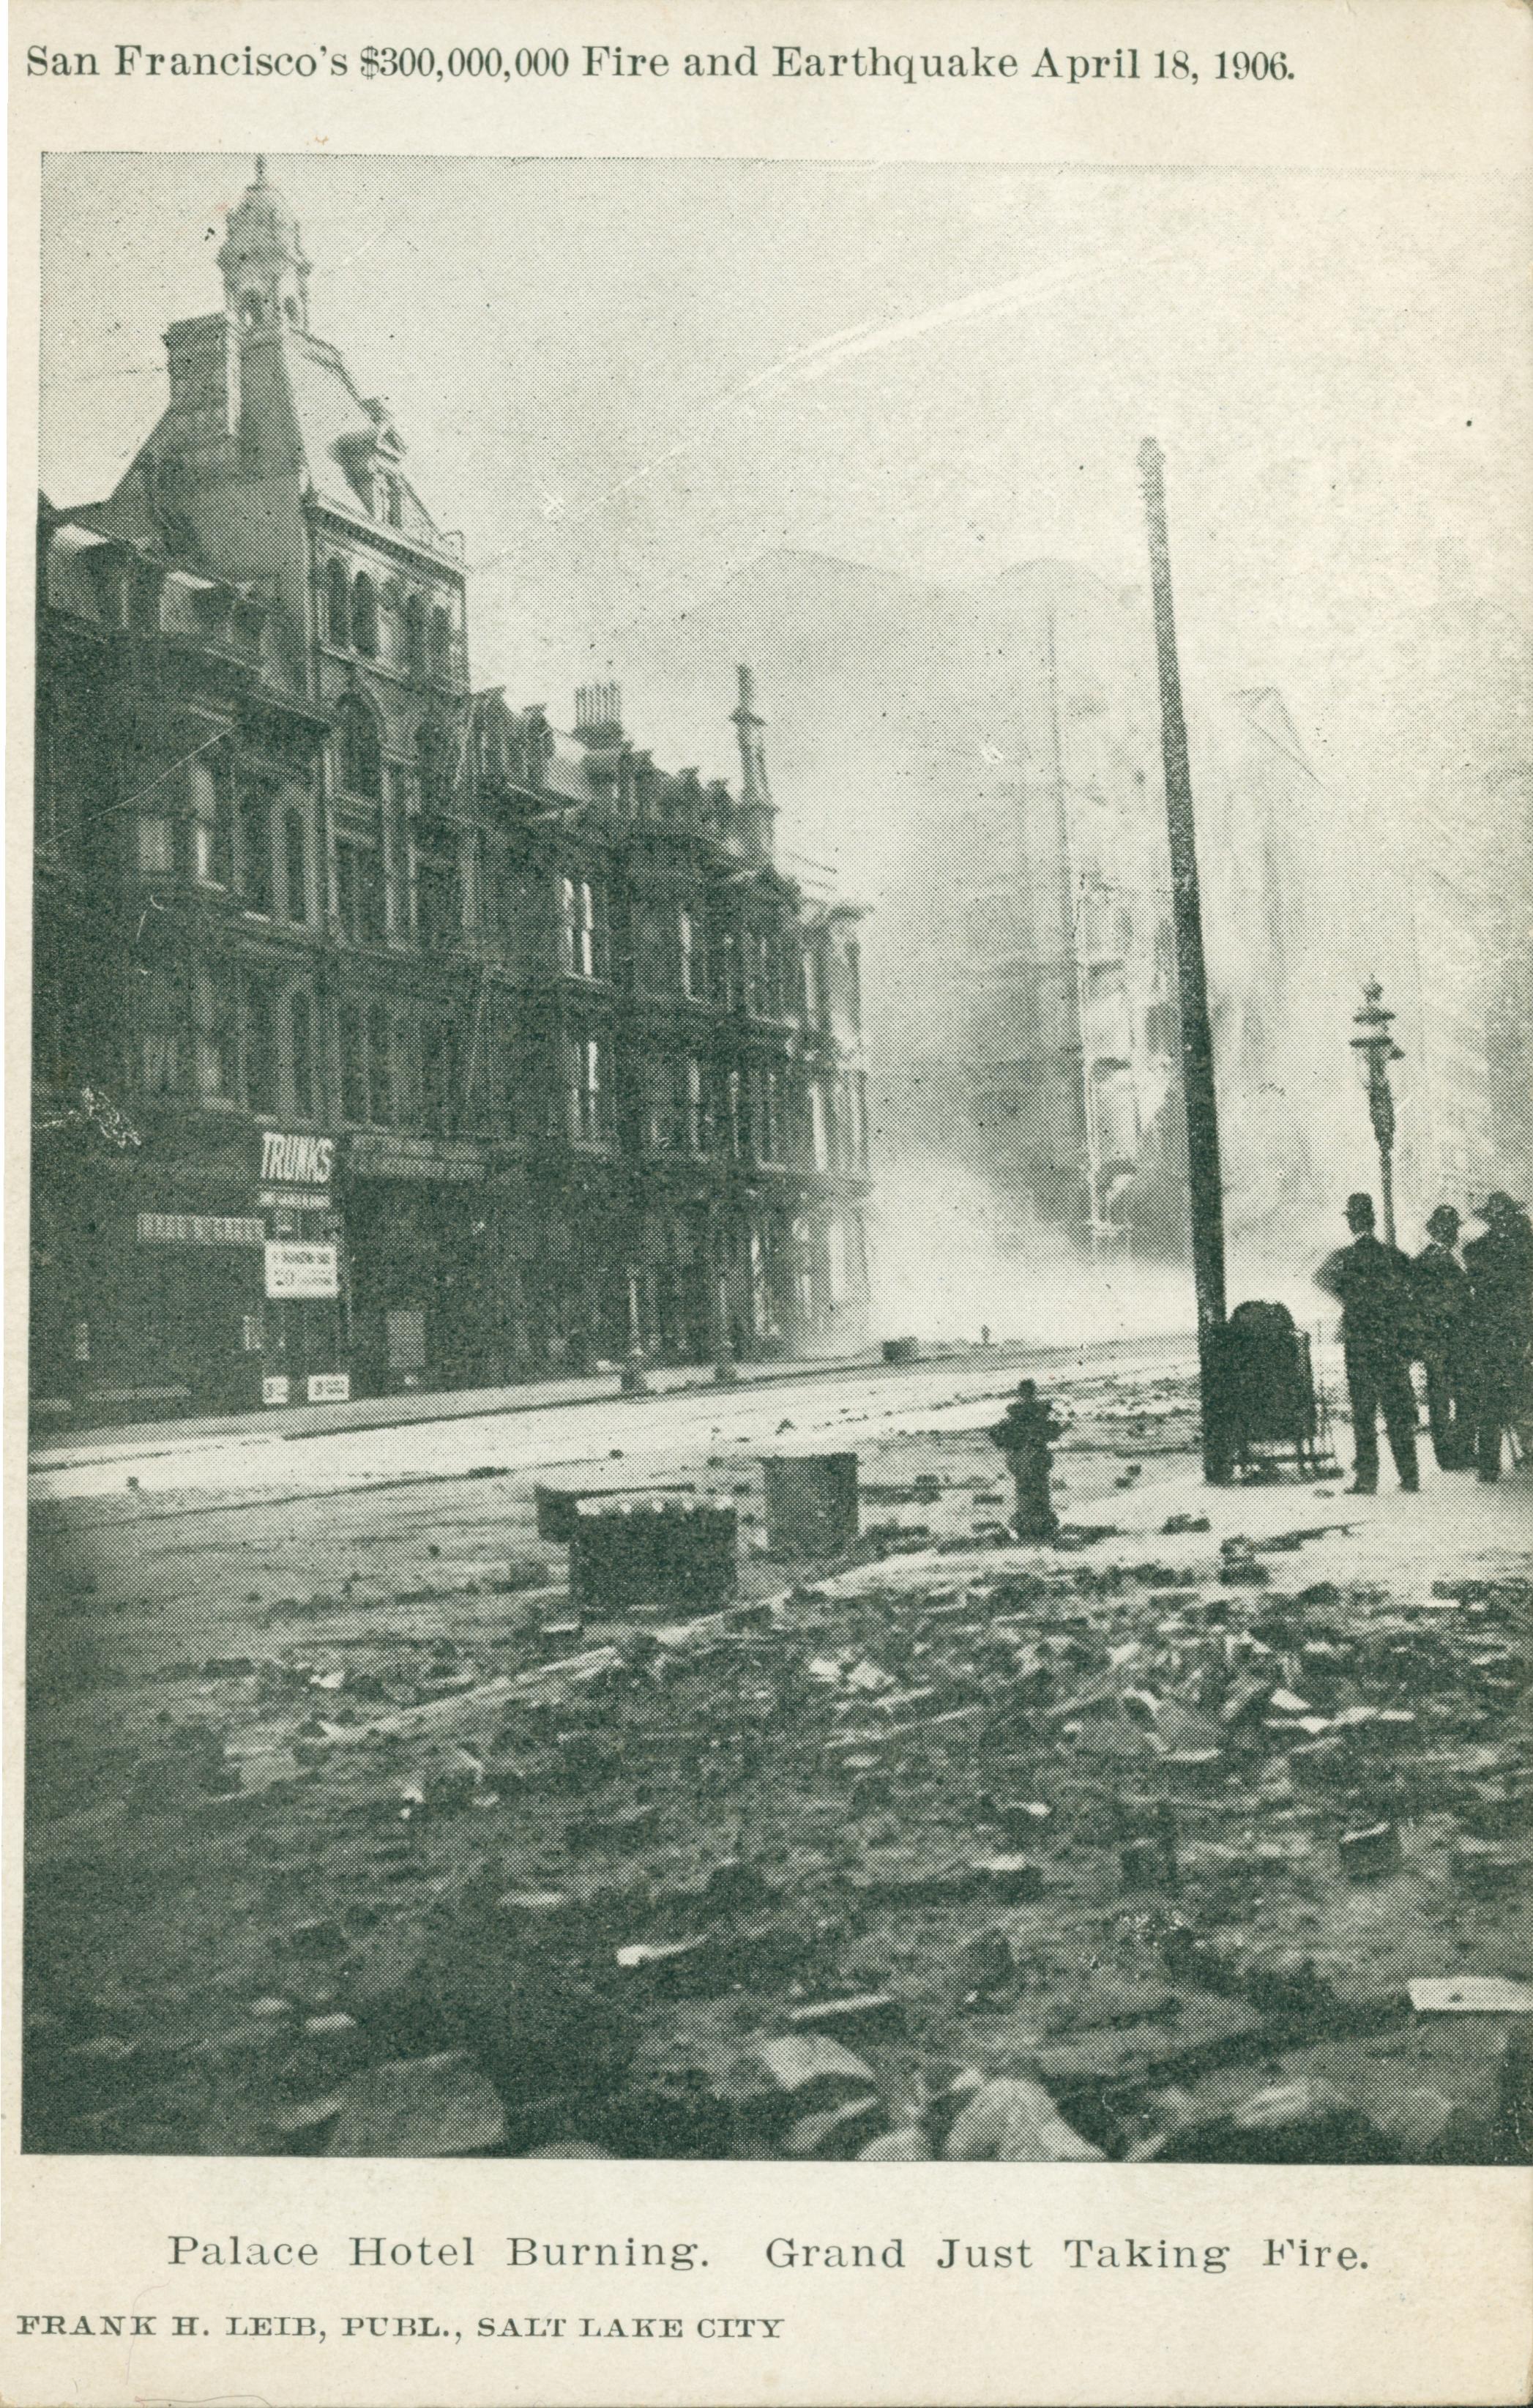 Photo of the Palace Hotel burning.